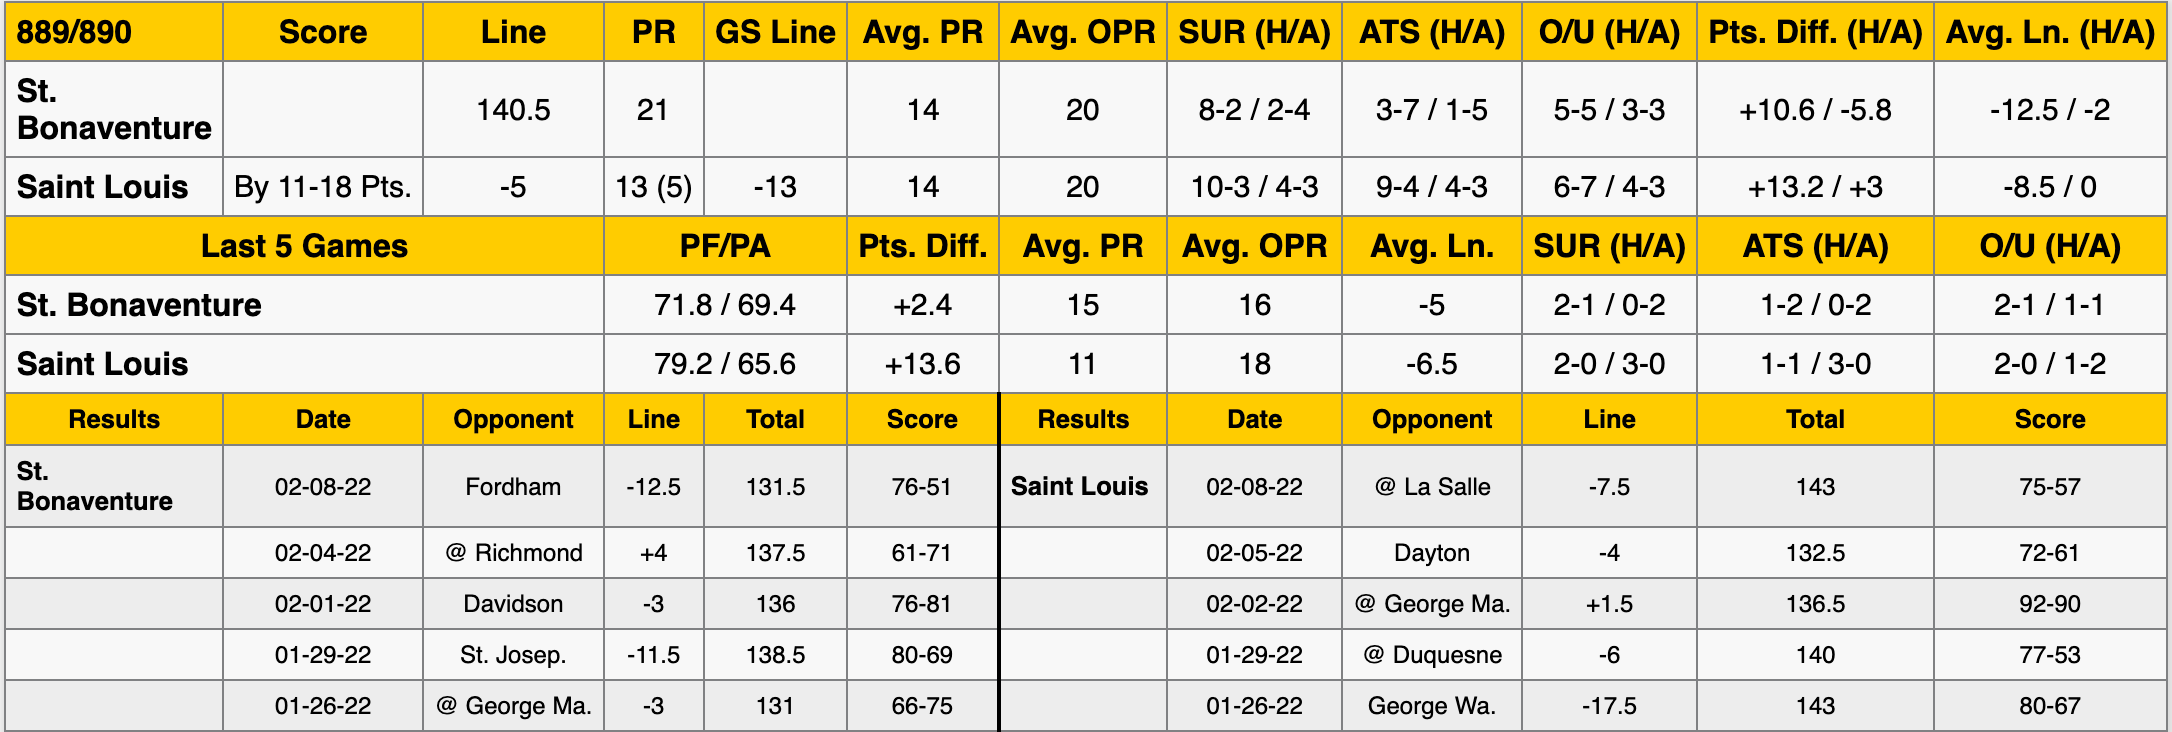 Saint Louis vs St. Bonaventure Stats